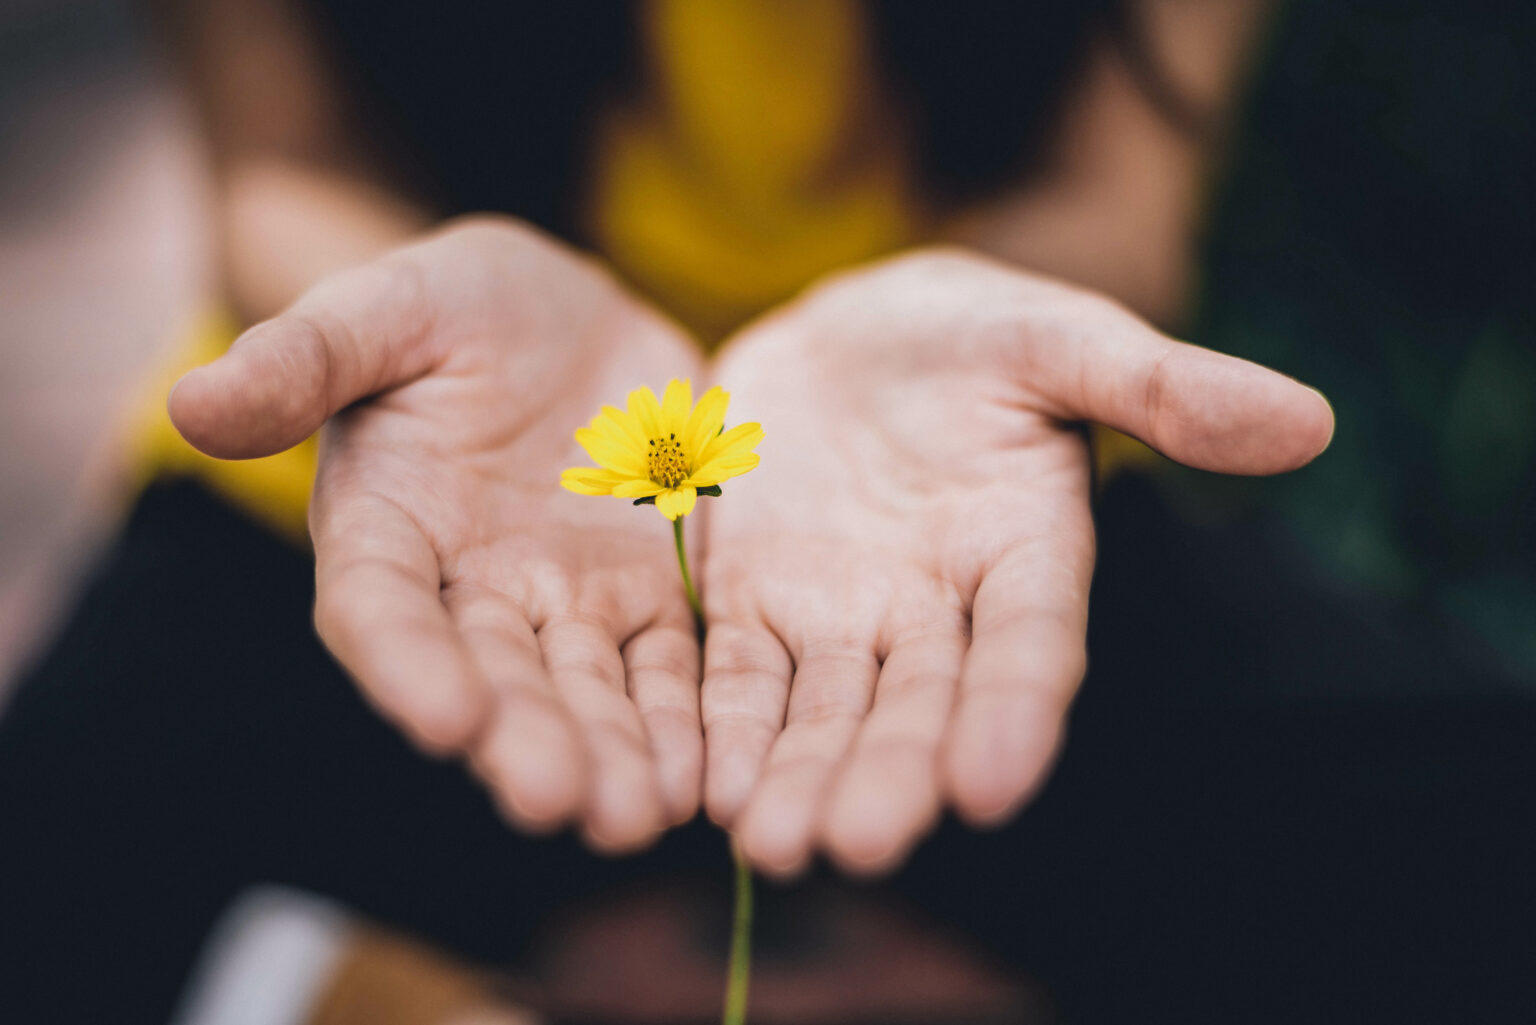 Zwei Hände, die eine gelbe Blume halten.